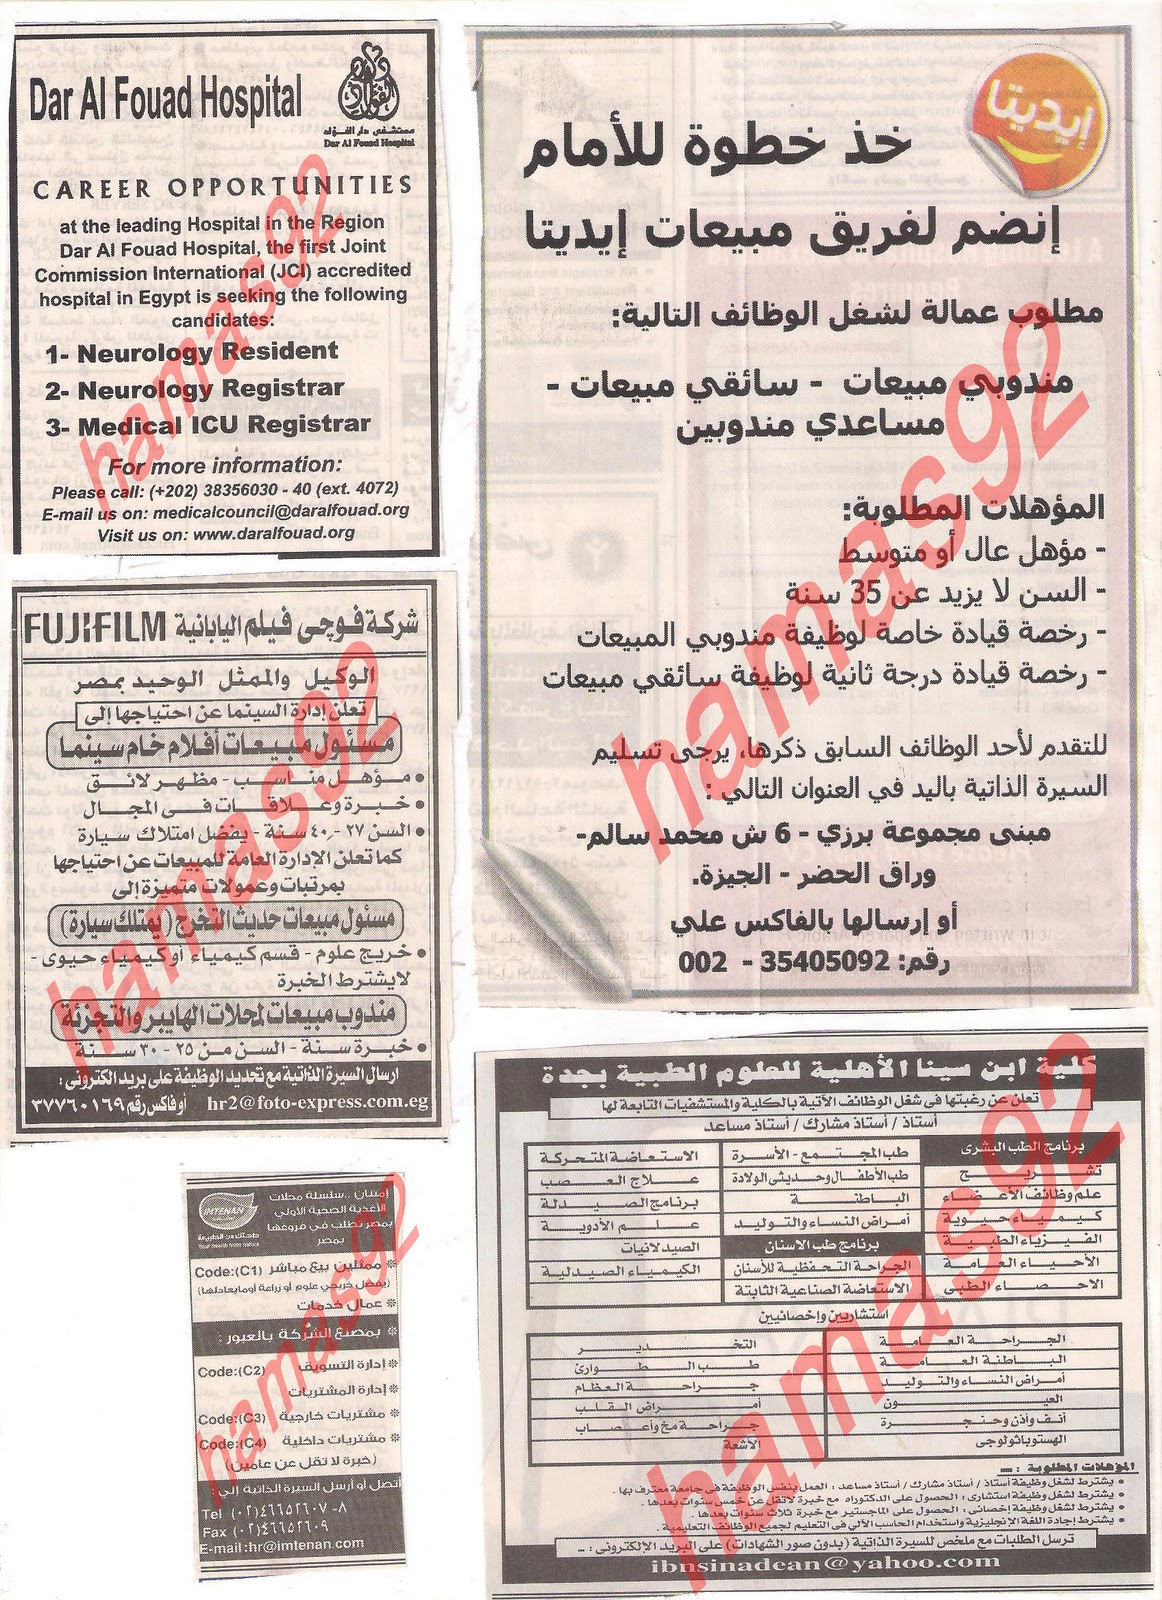 وظائف خالية من جريدة الاهرام الجمعة 2\12\2011 , الجزء الثالث  Picture+012